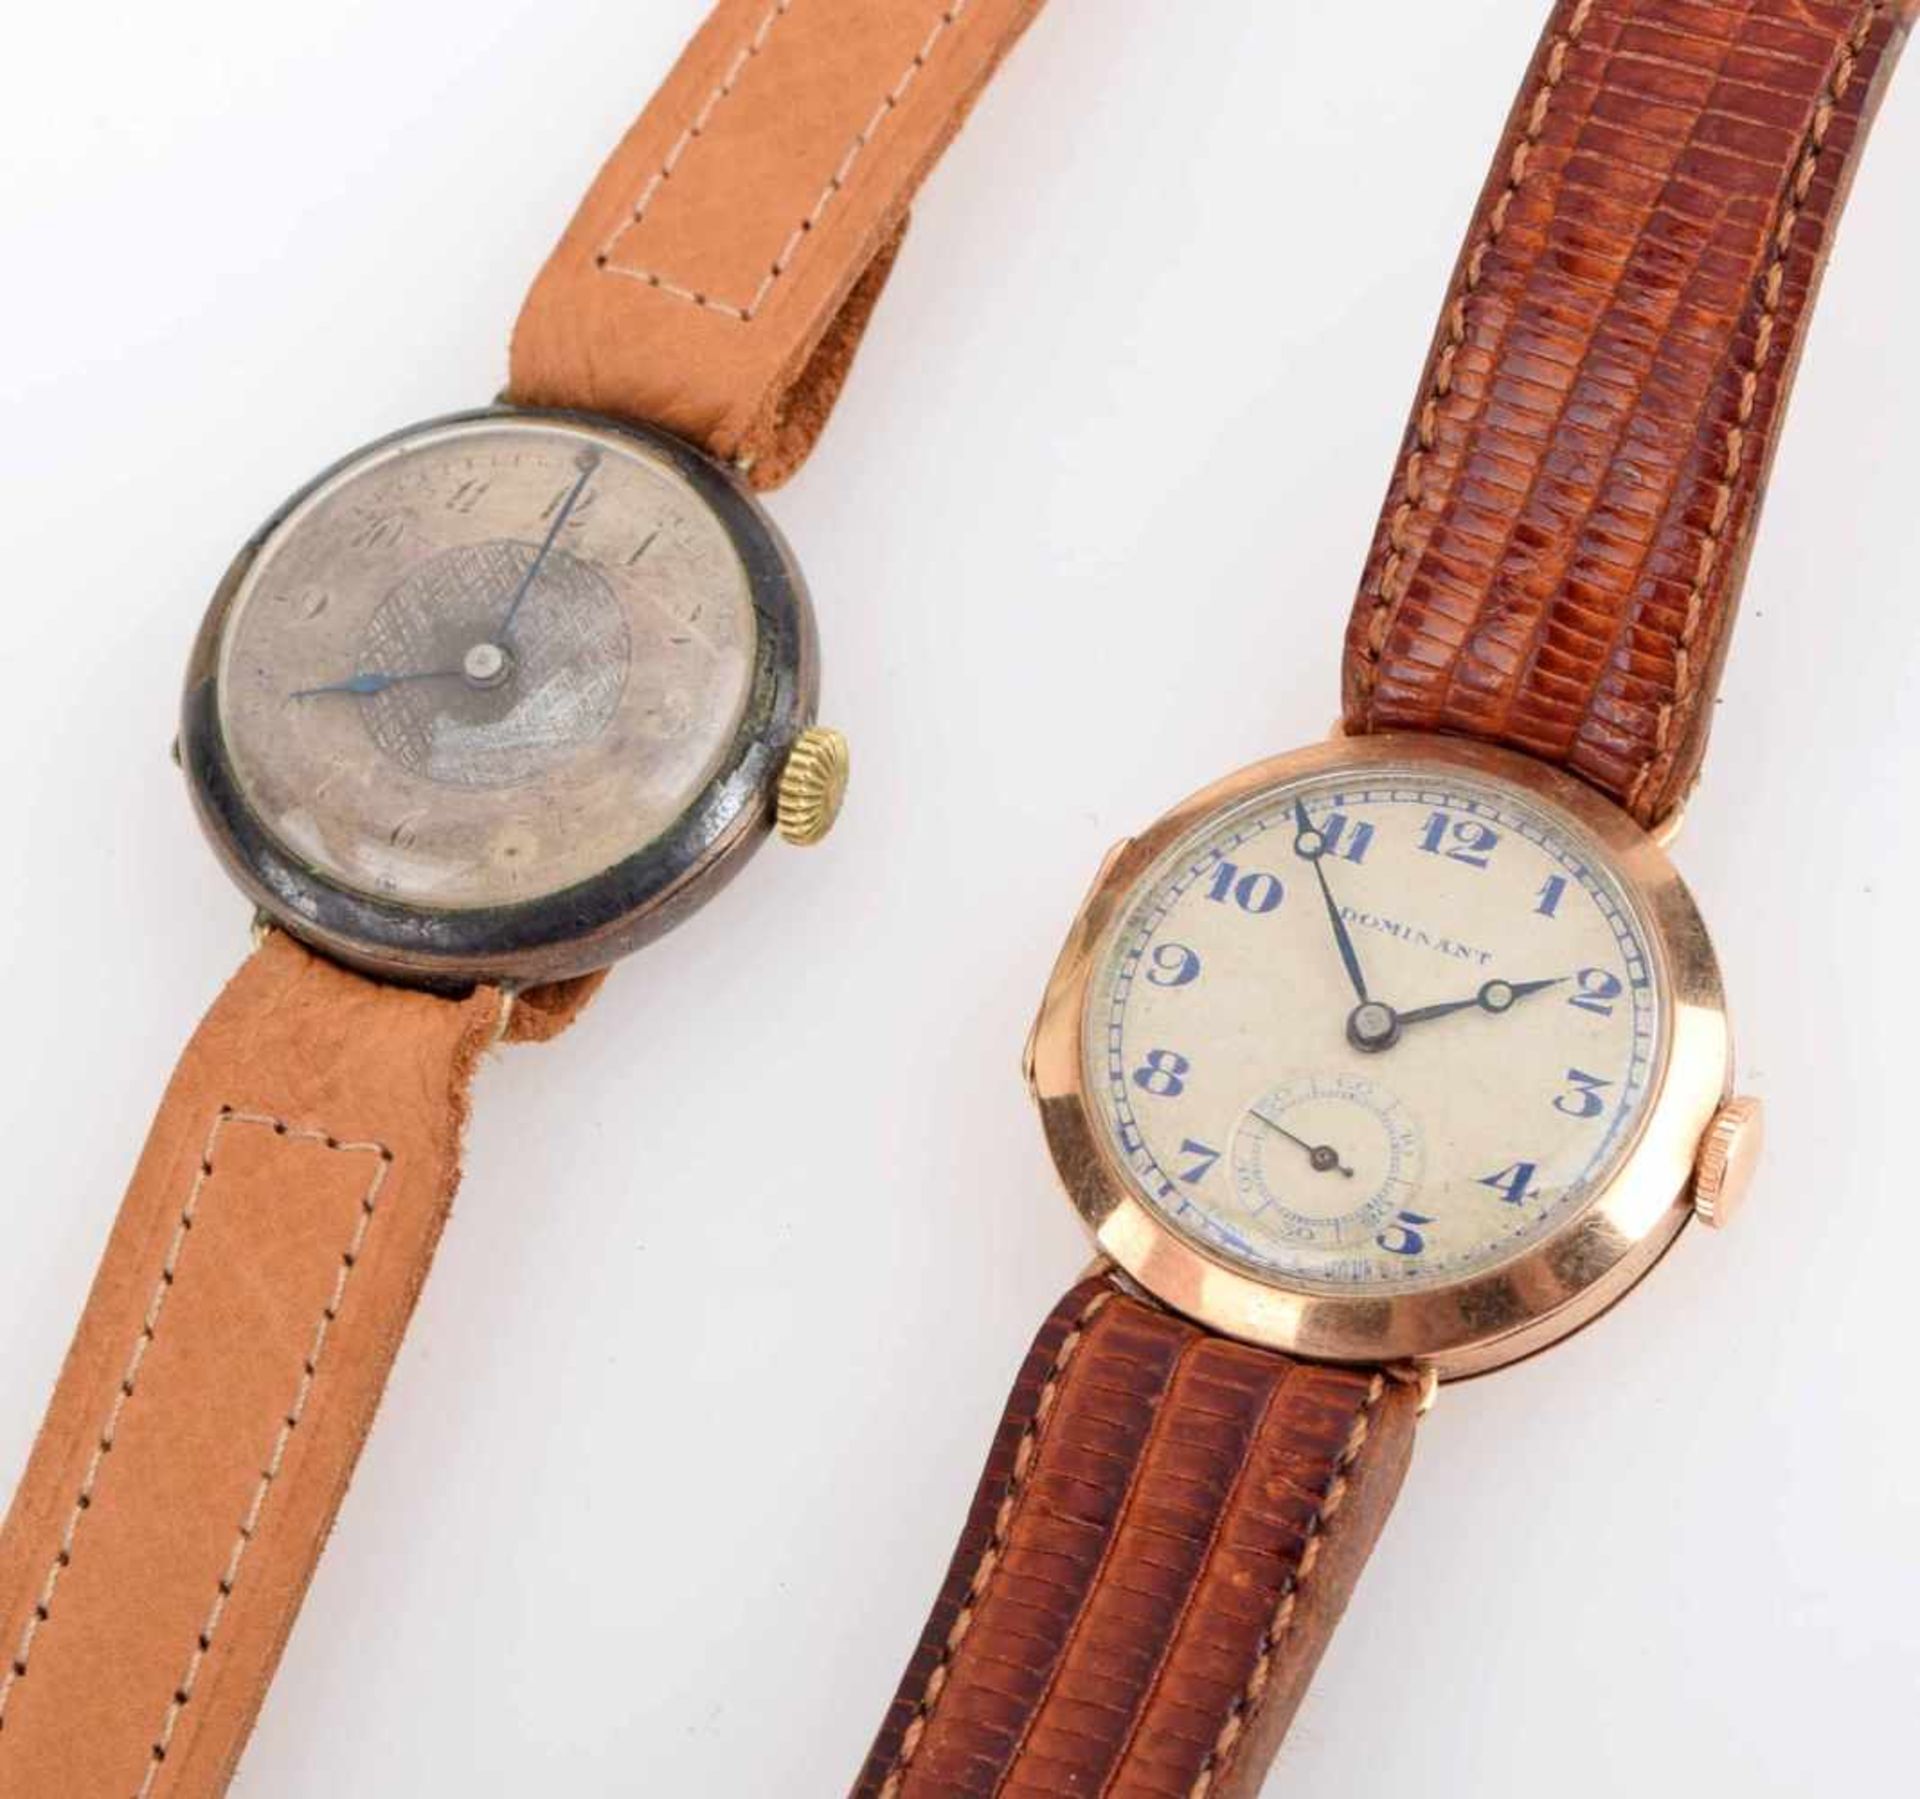 Zwei Armbanduhren 1 x Gehäuse RG 375, Handaufzug (ungeprüft), helles Zifferblatt bez. "Dominant", - Bild 2 aus 3